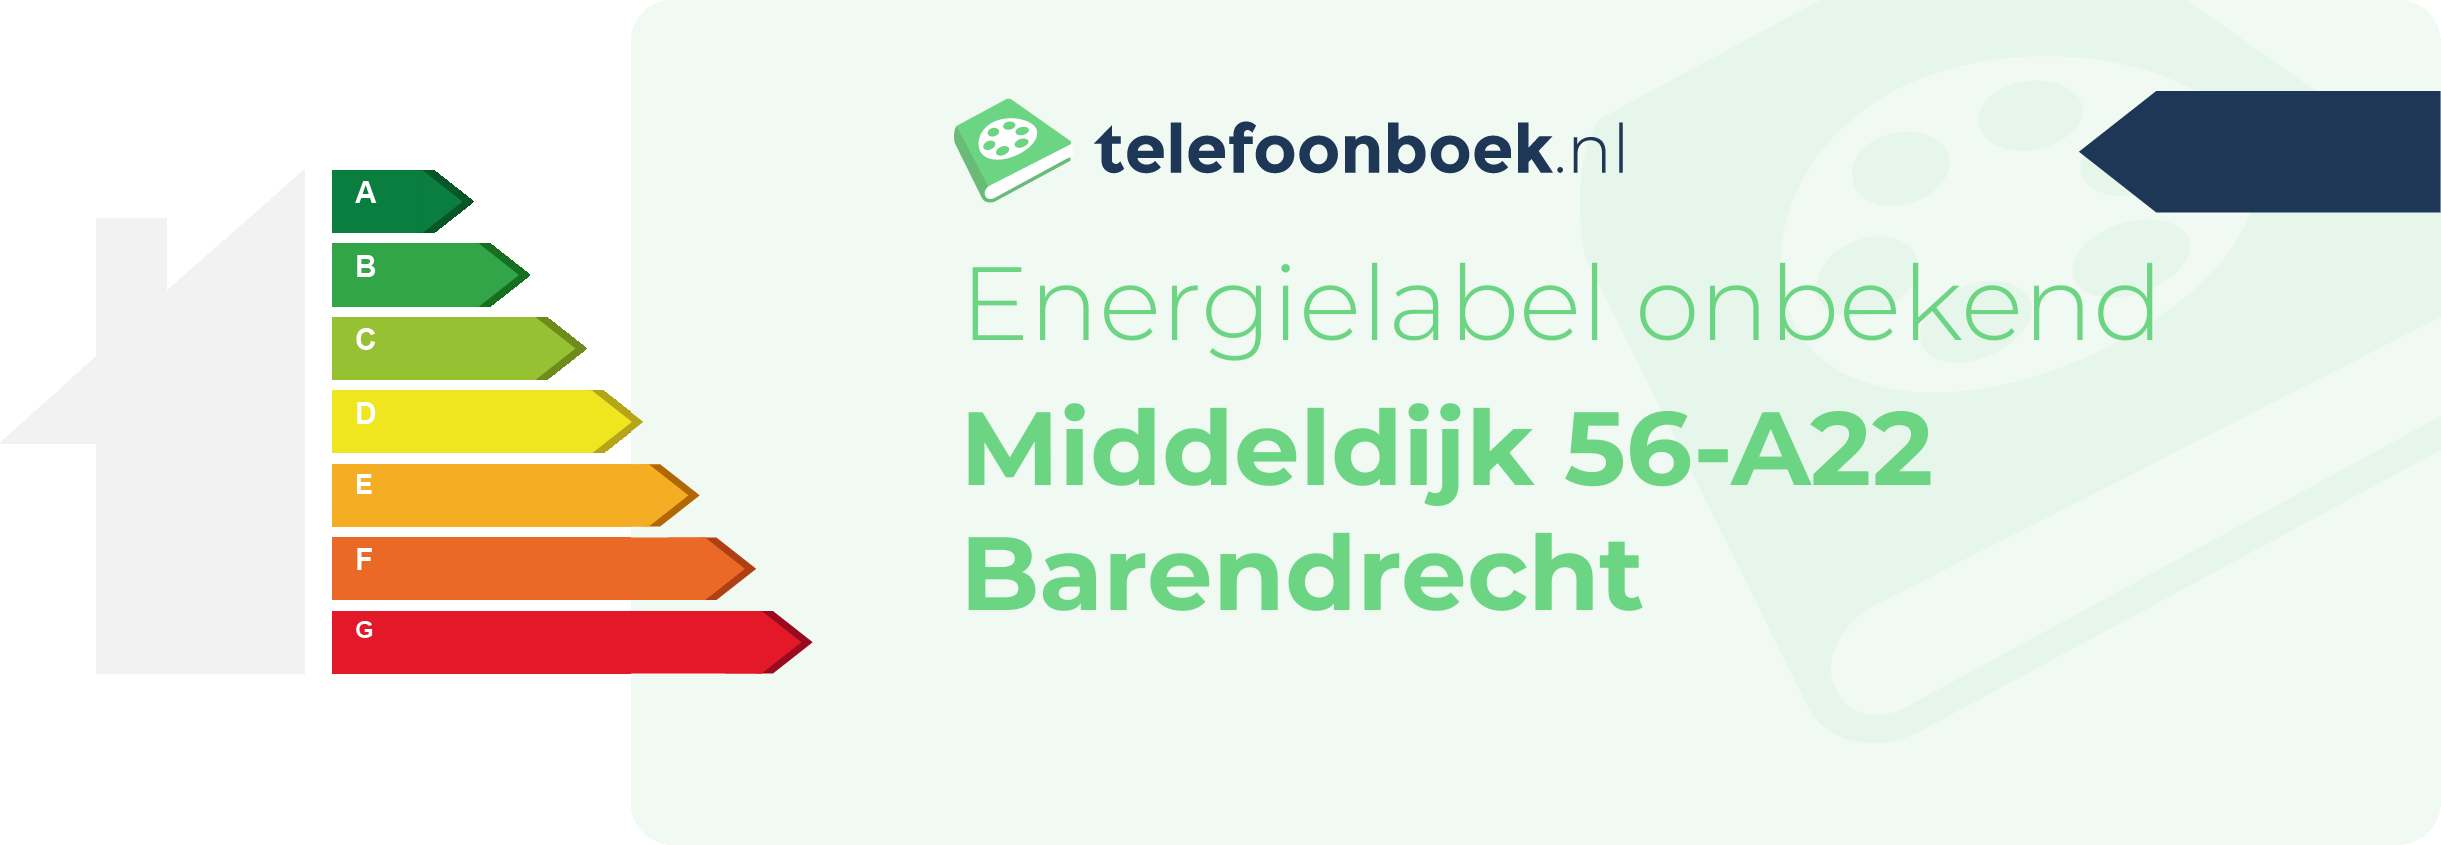 Energielabel Middeldijk 56-A22 Barendrecht